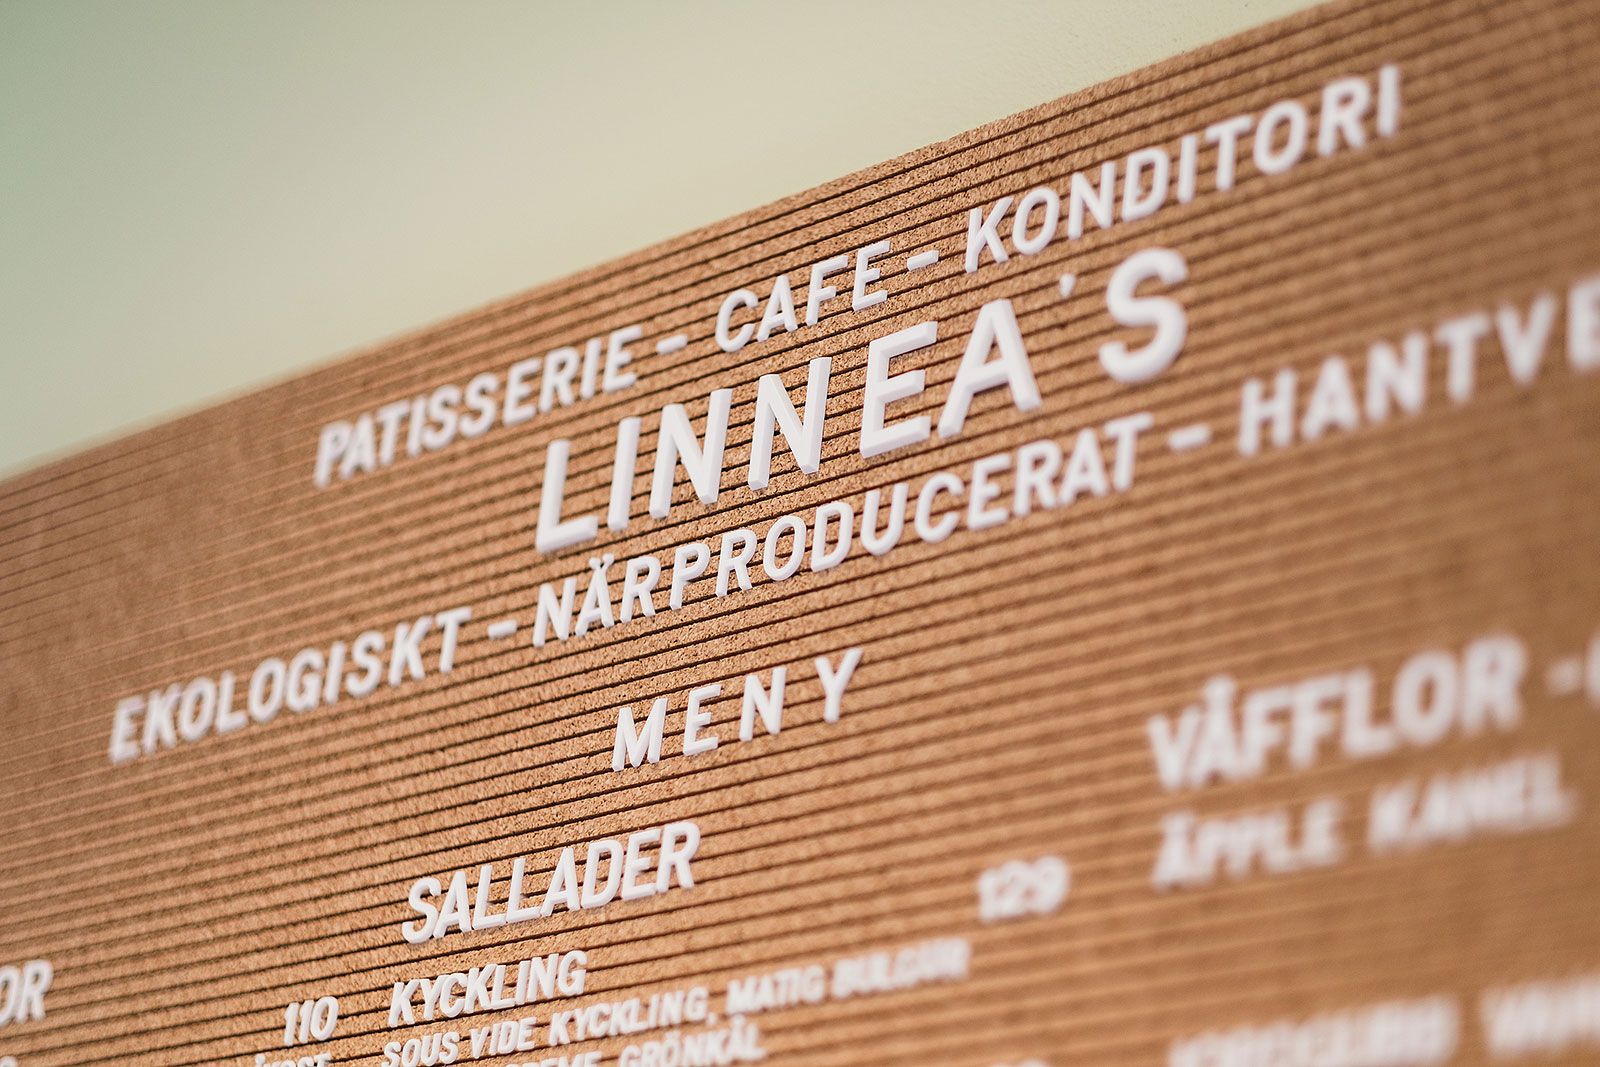 Linnea's Pâtisserie, Café & Konditori